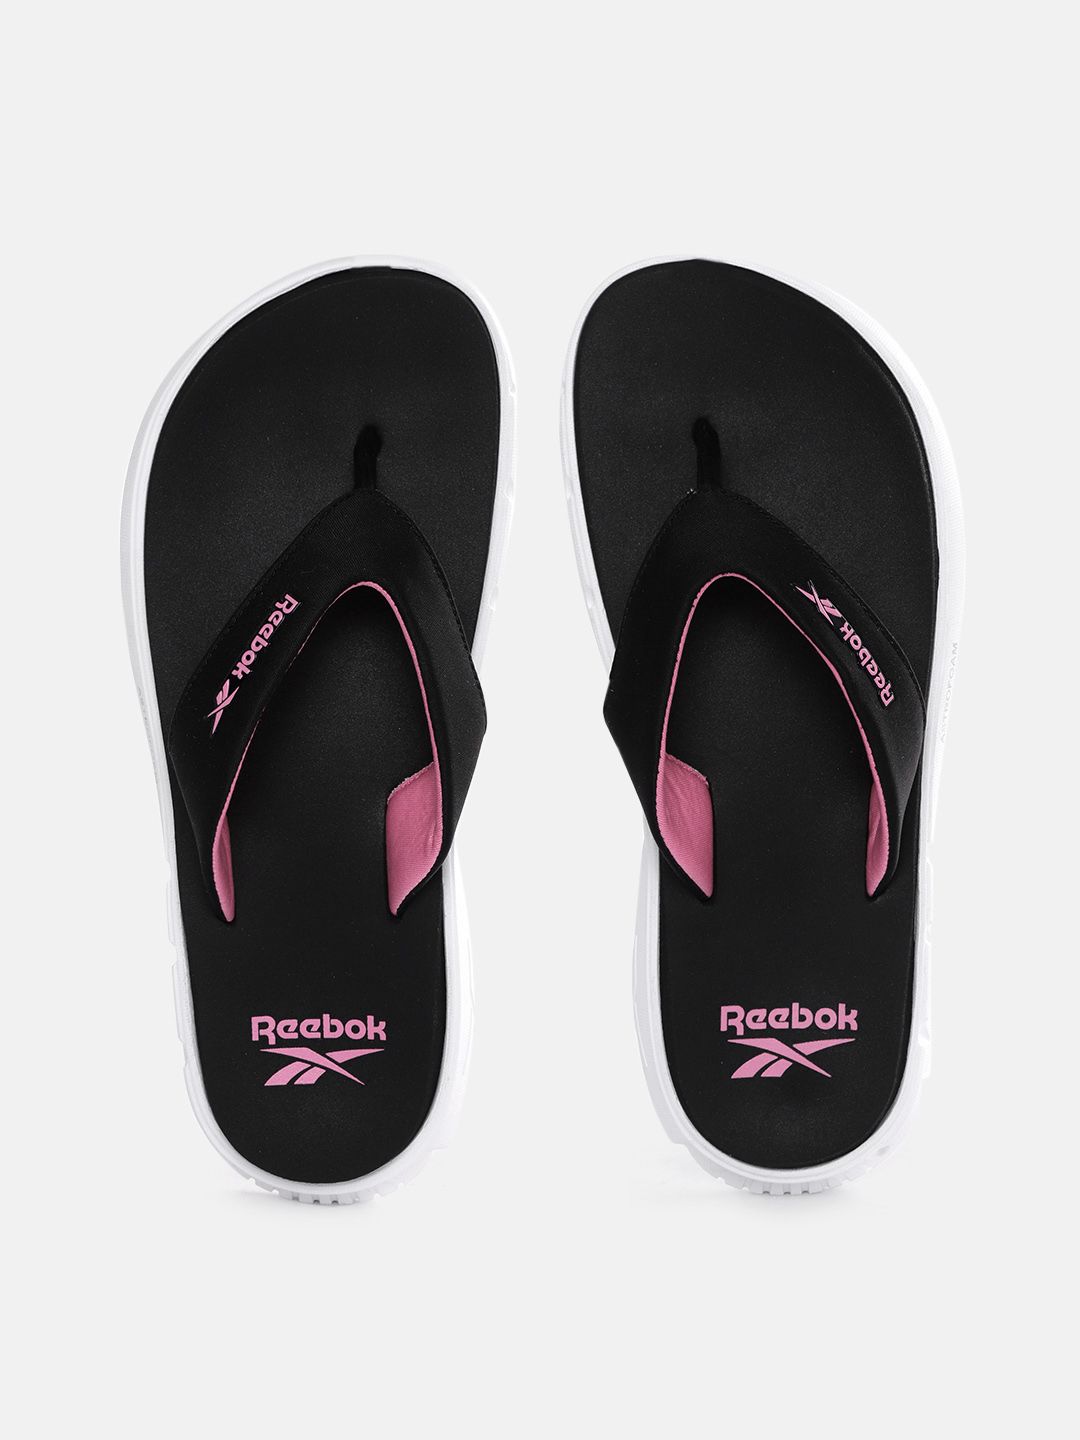 Reebok Women Black & Pink Brand Logo Print Thong Flip-Flops Price in India